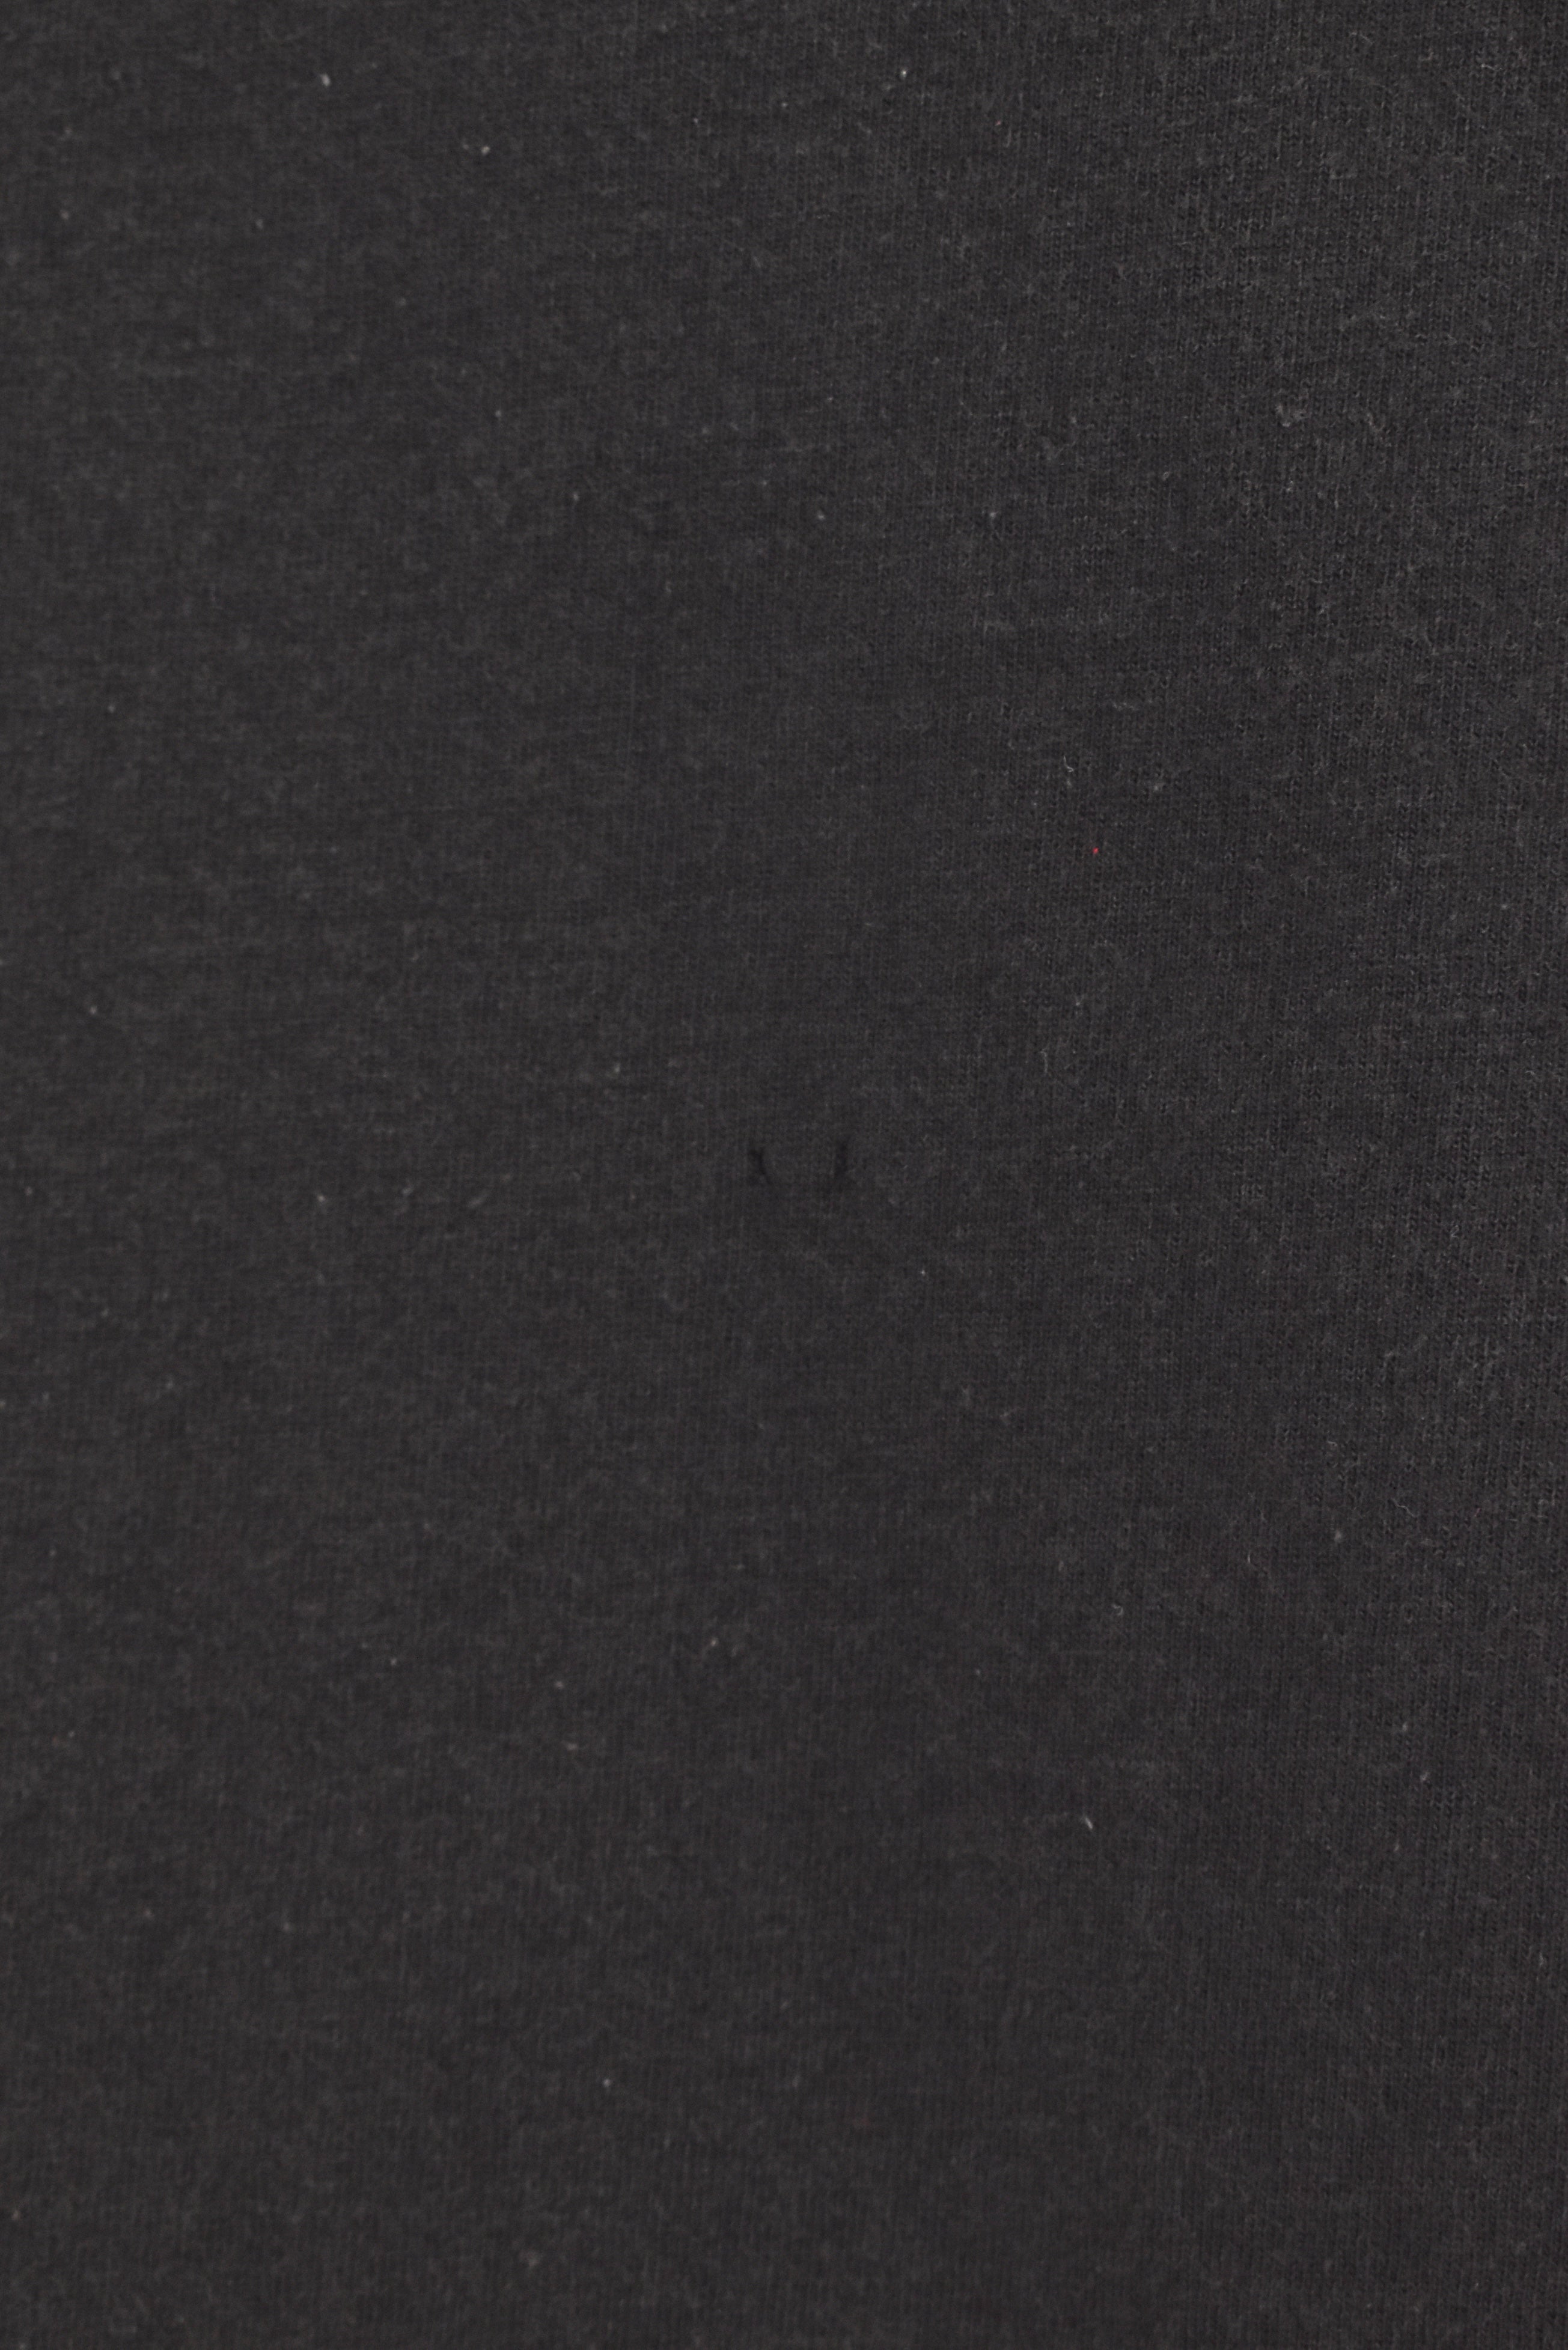 Vintage Cincinnati Bengals shirt, black graphic tee - AU Large PRO SPORT